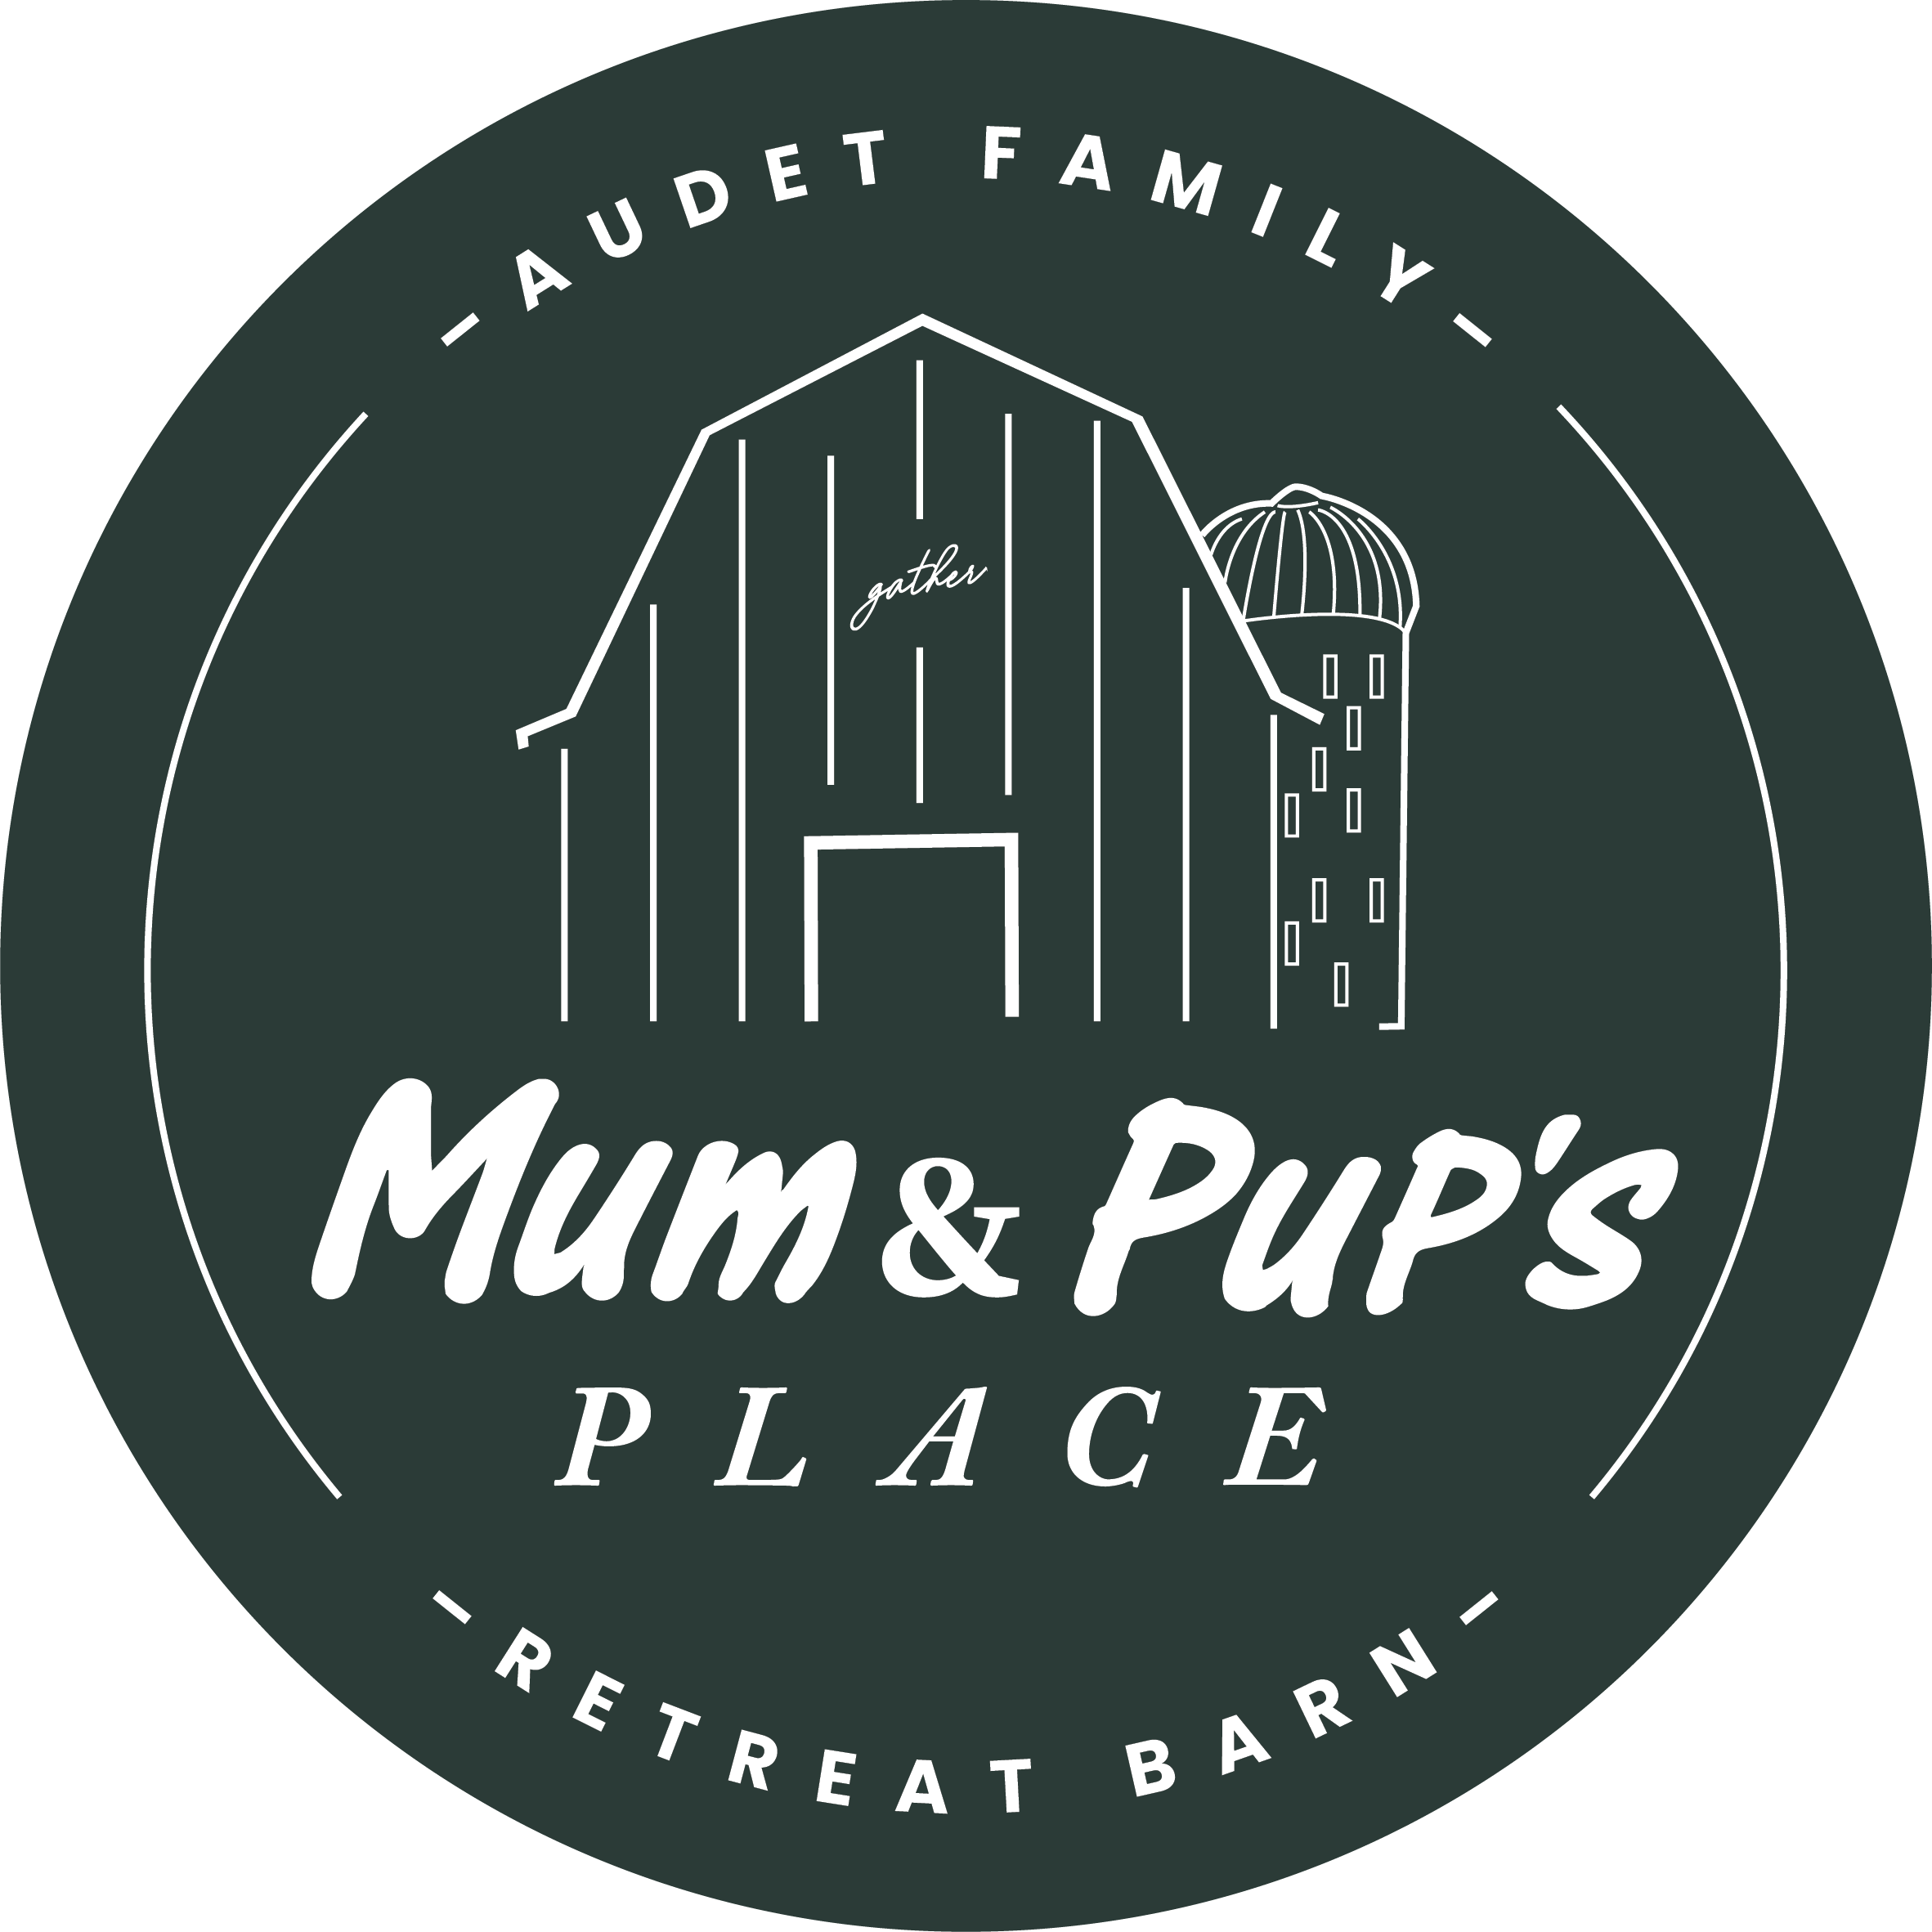 Mum & Pup's Place